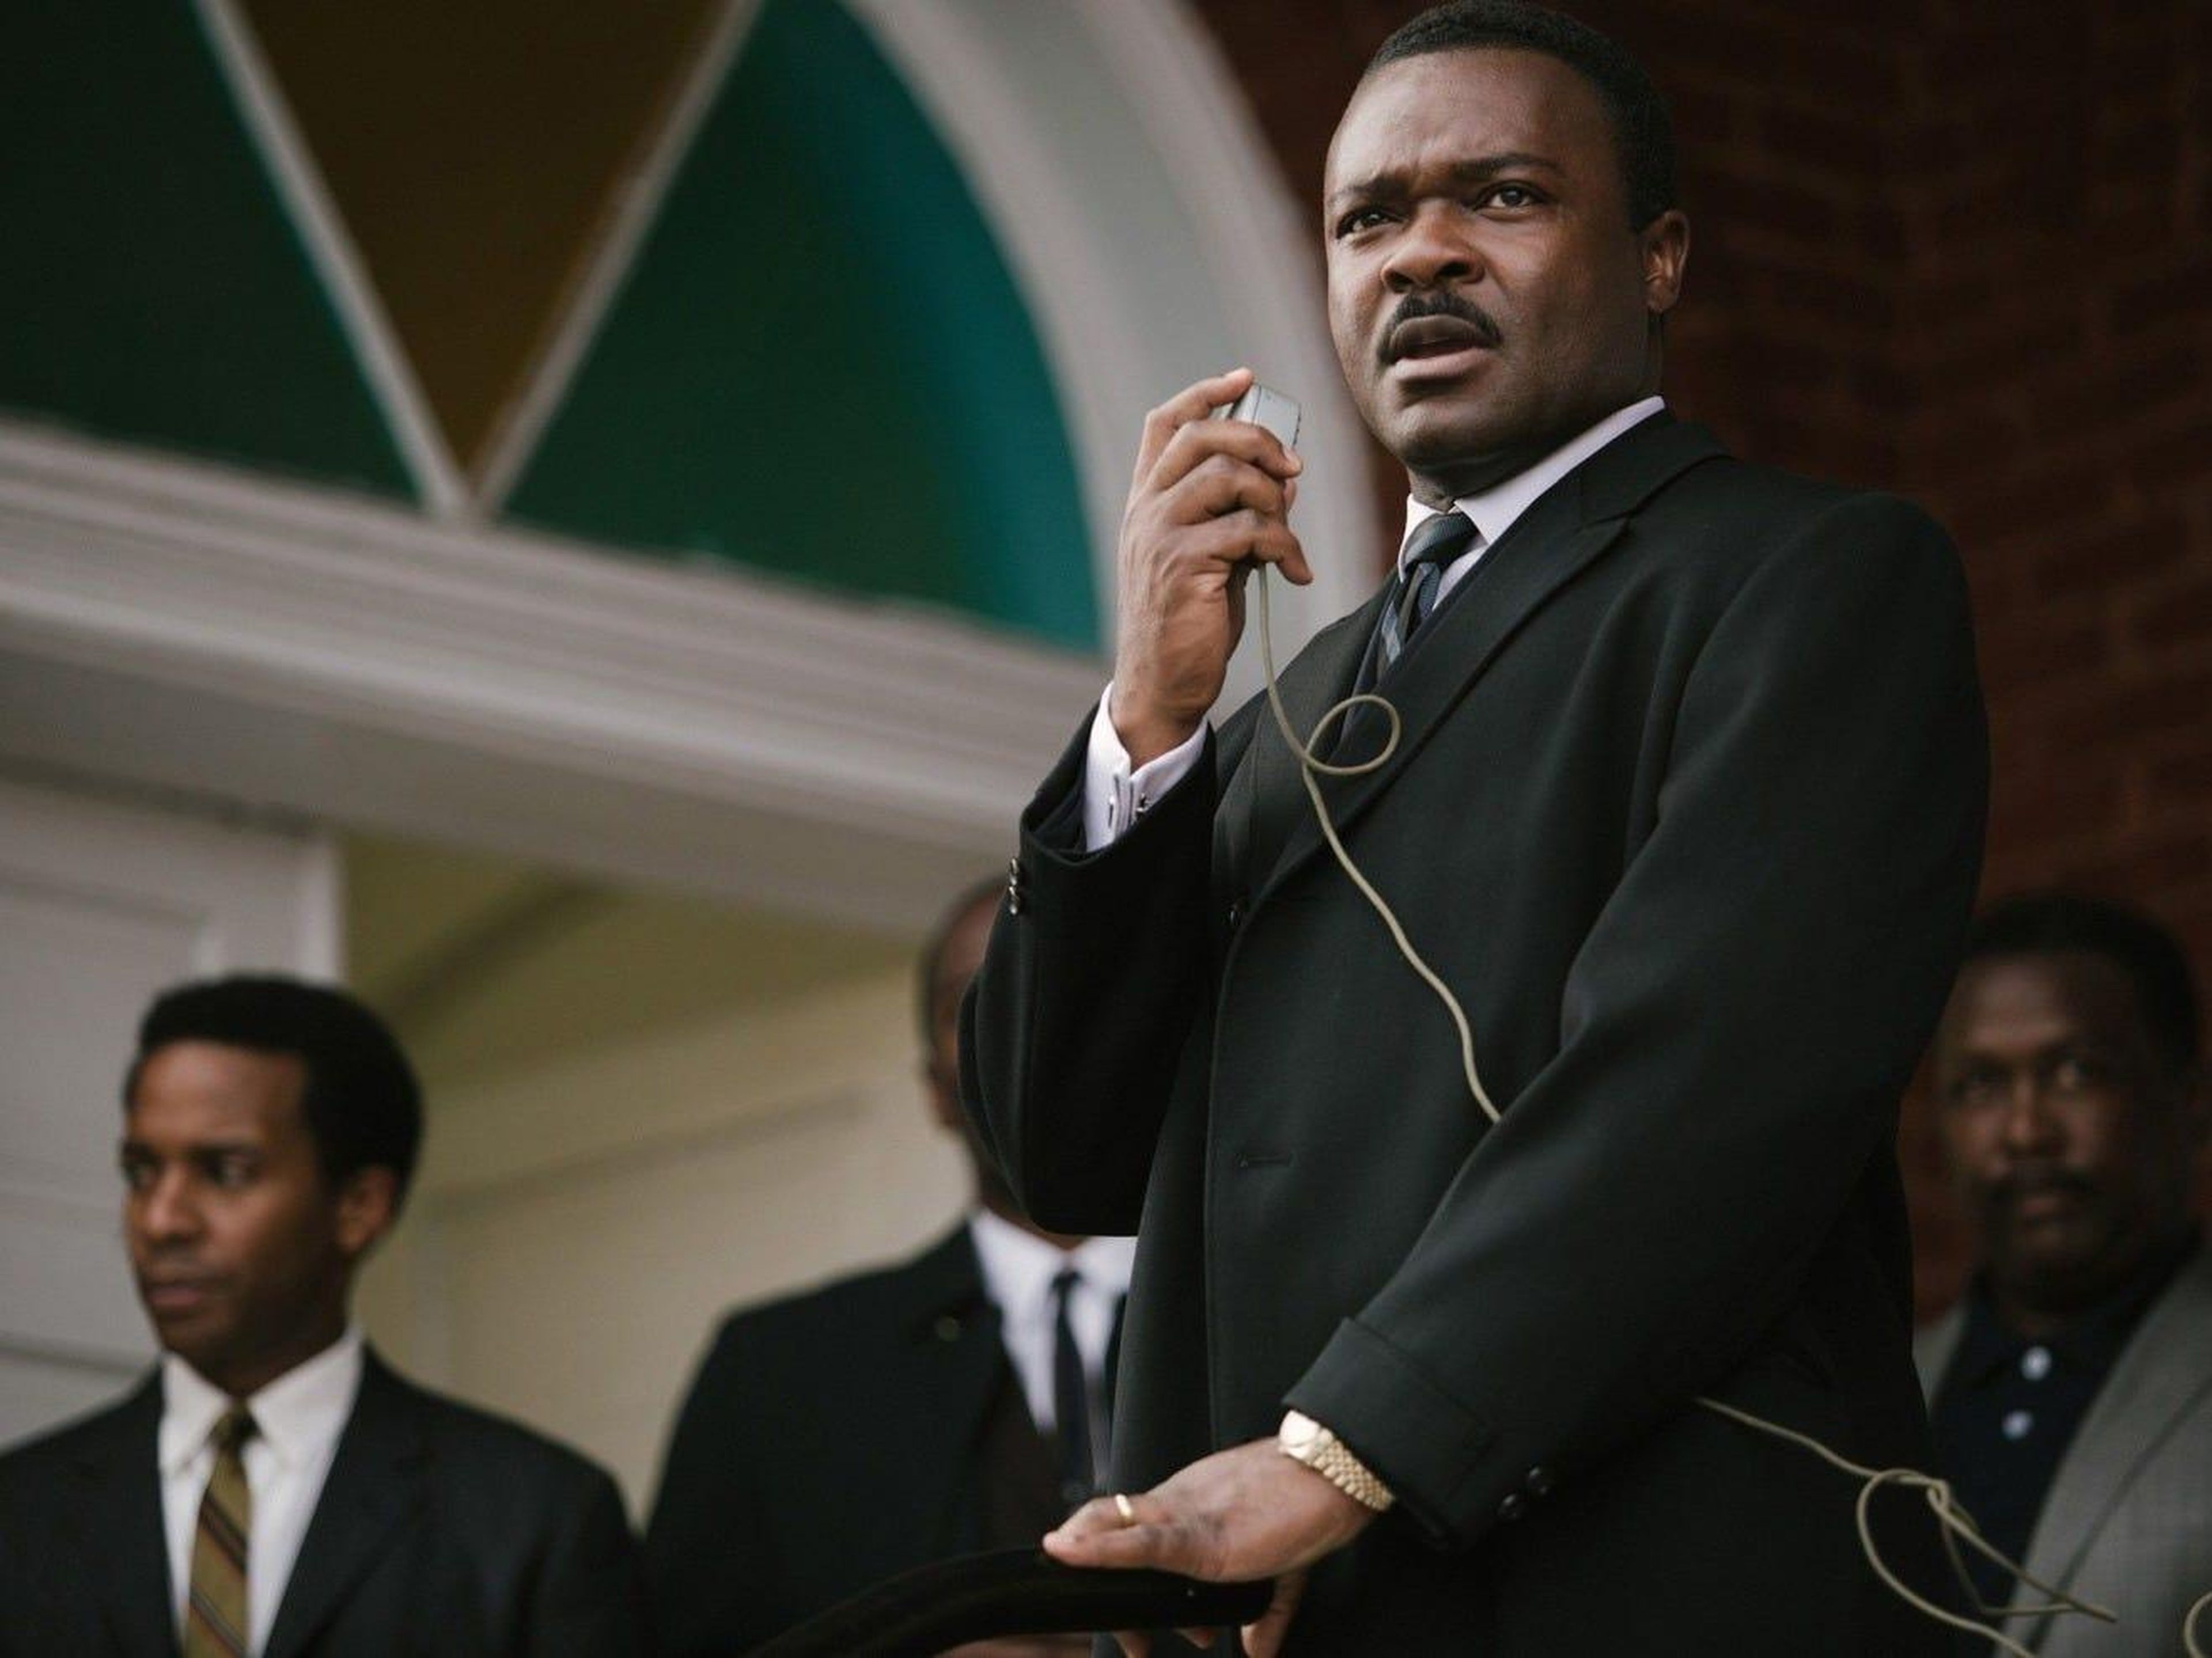 David Oyelowo interpreta a Martin Luther King, Jr. en "Selma".